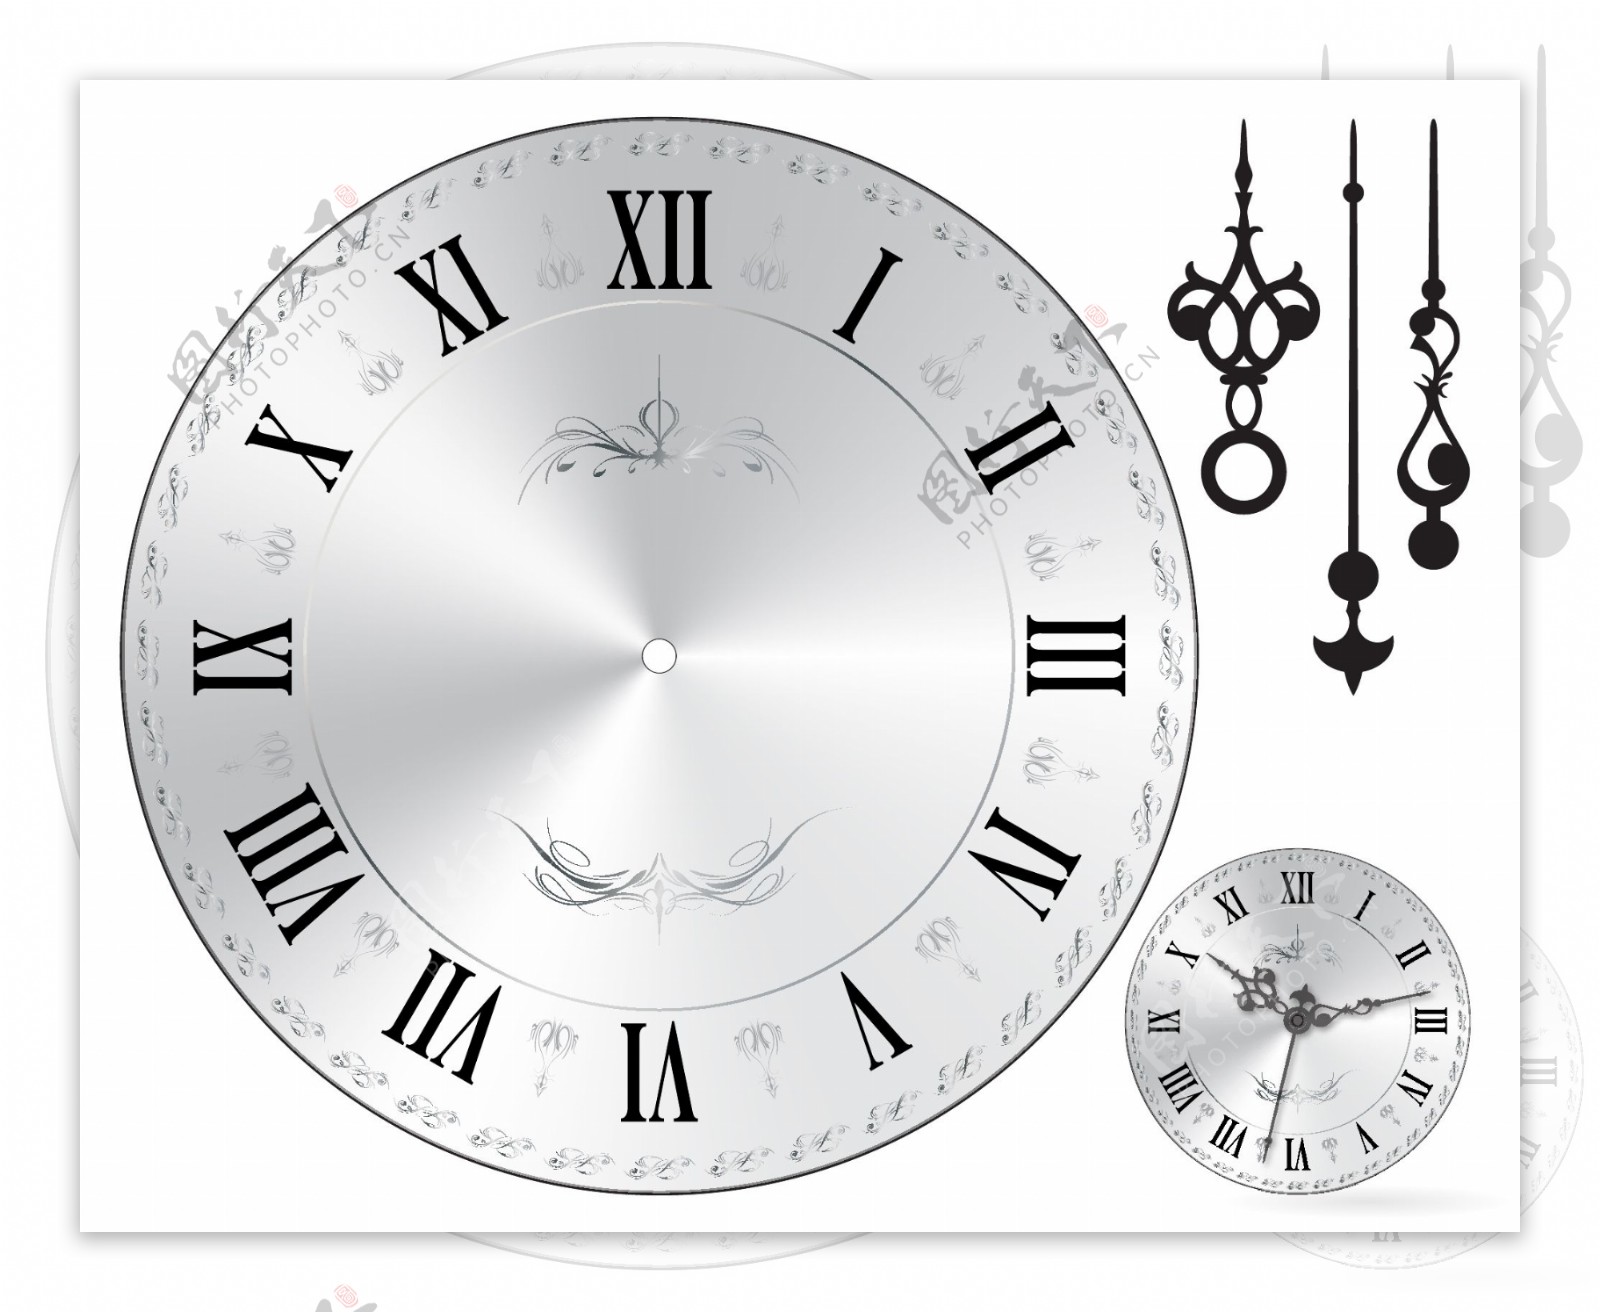 钟表手表闹钟时钟腕表图片